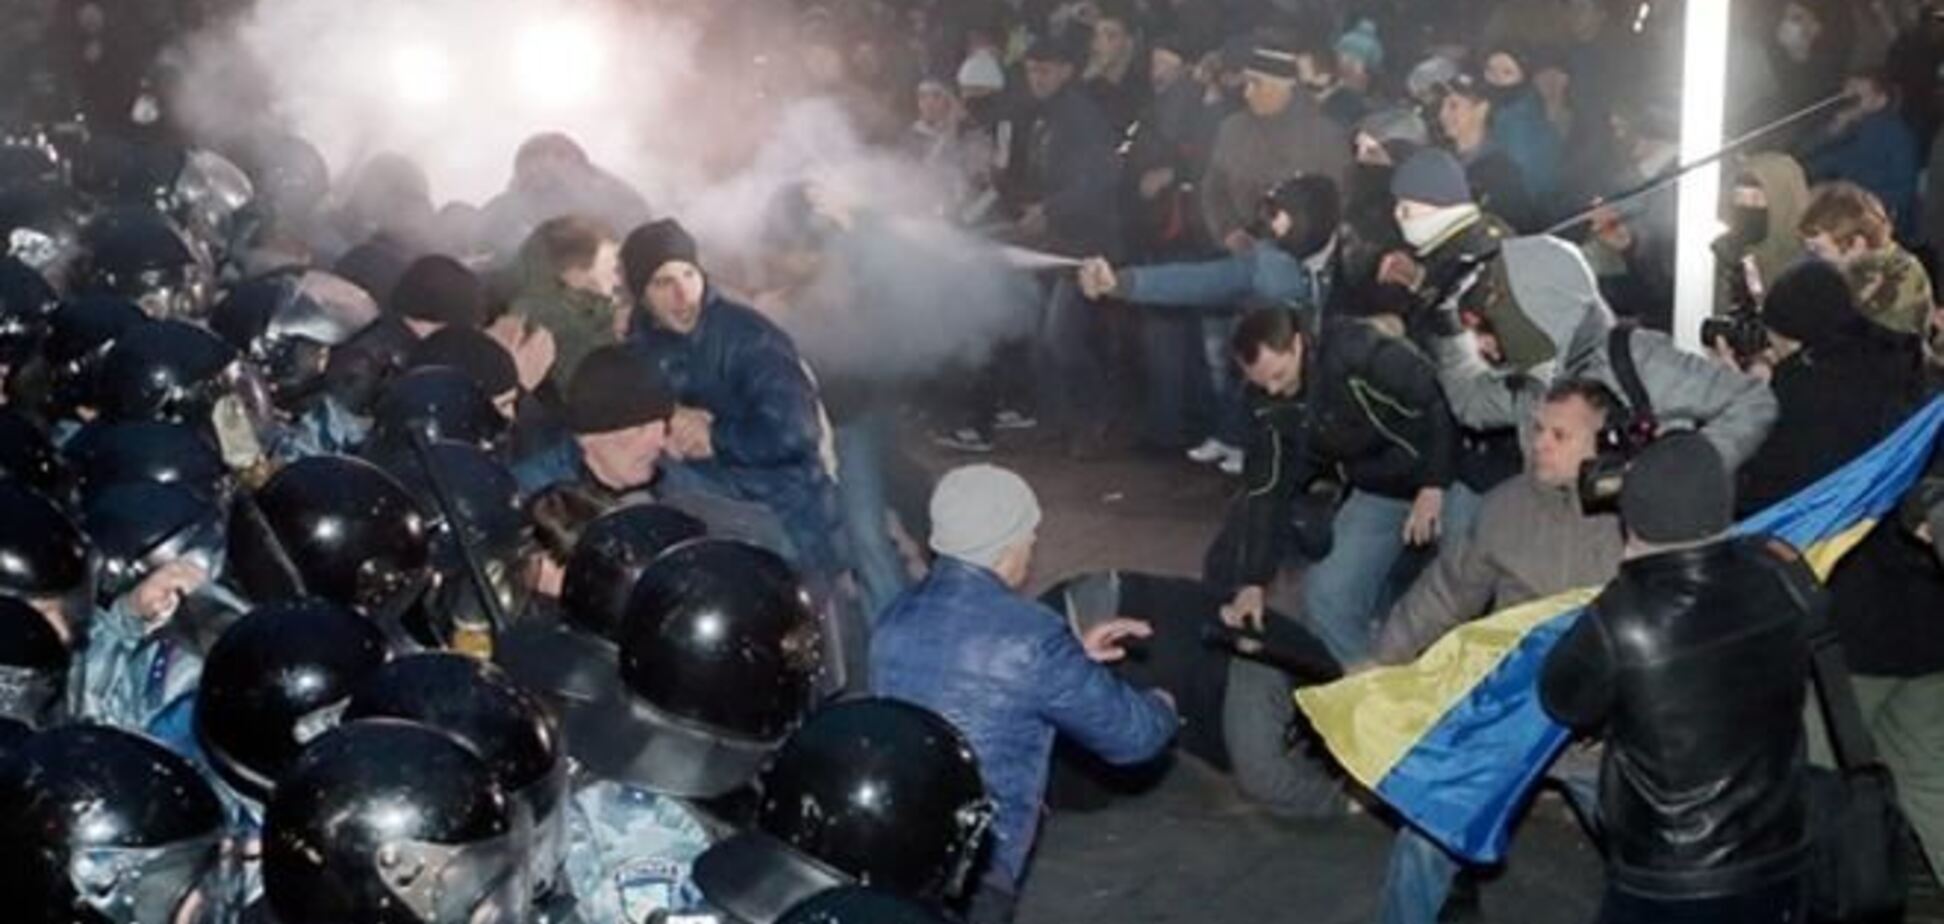 Зниклого після розгону Майдану активіста знайшли в реанімації - Руслана